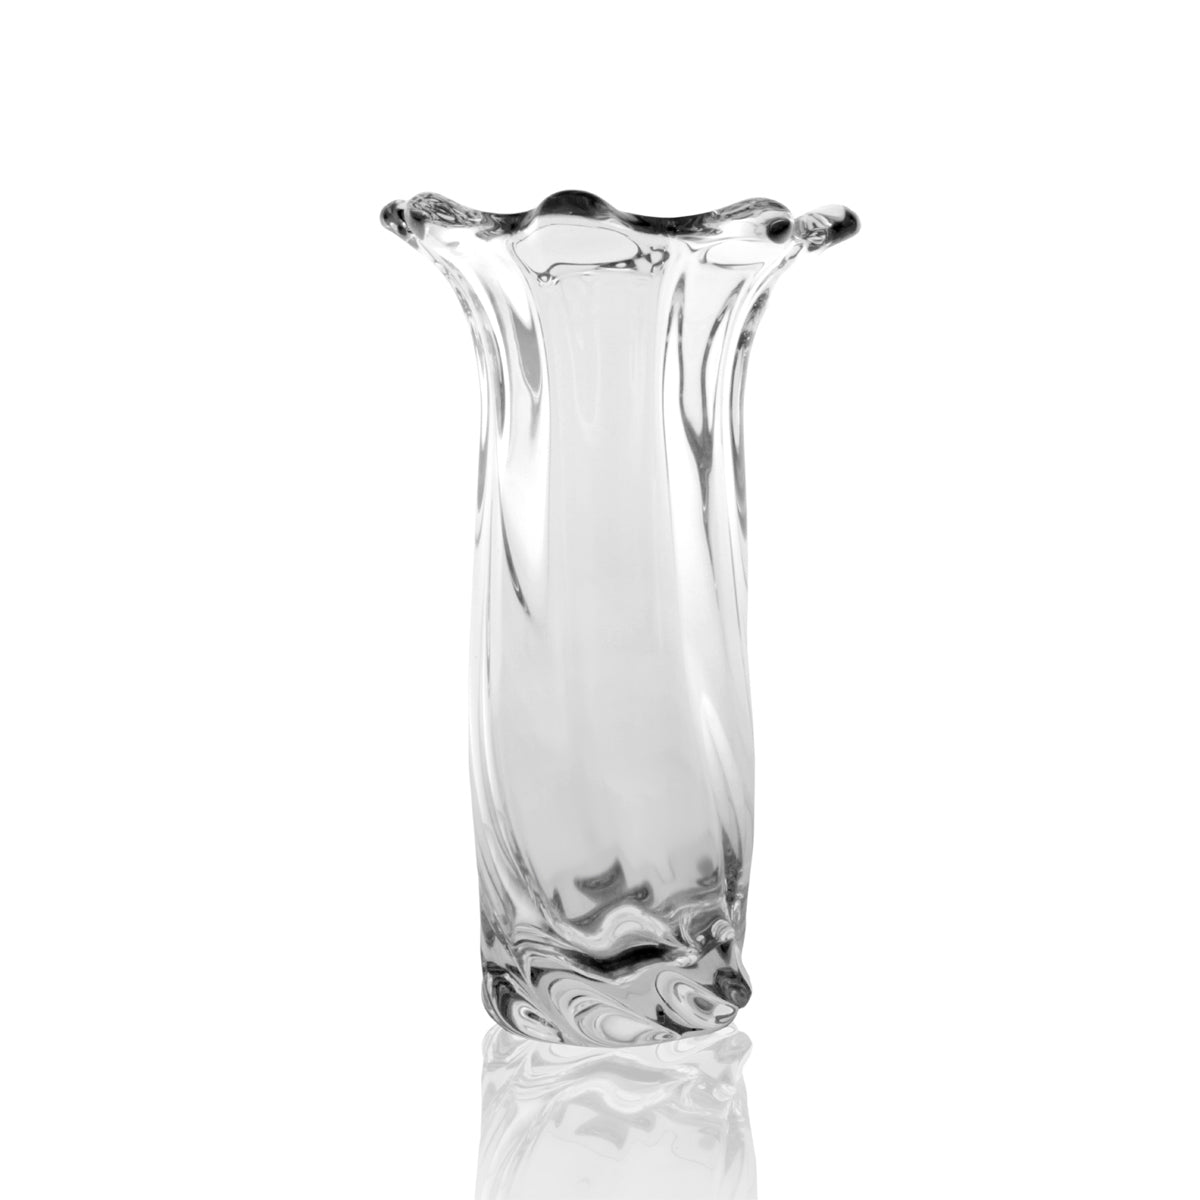 Prestigioso vaso artigianale in cristallo al piombo interamente prodotto a mano